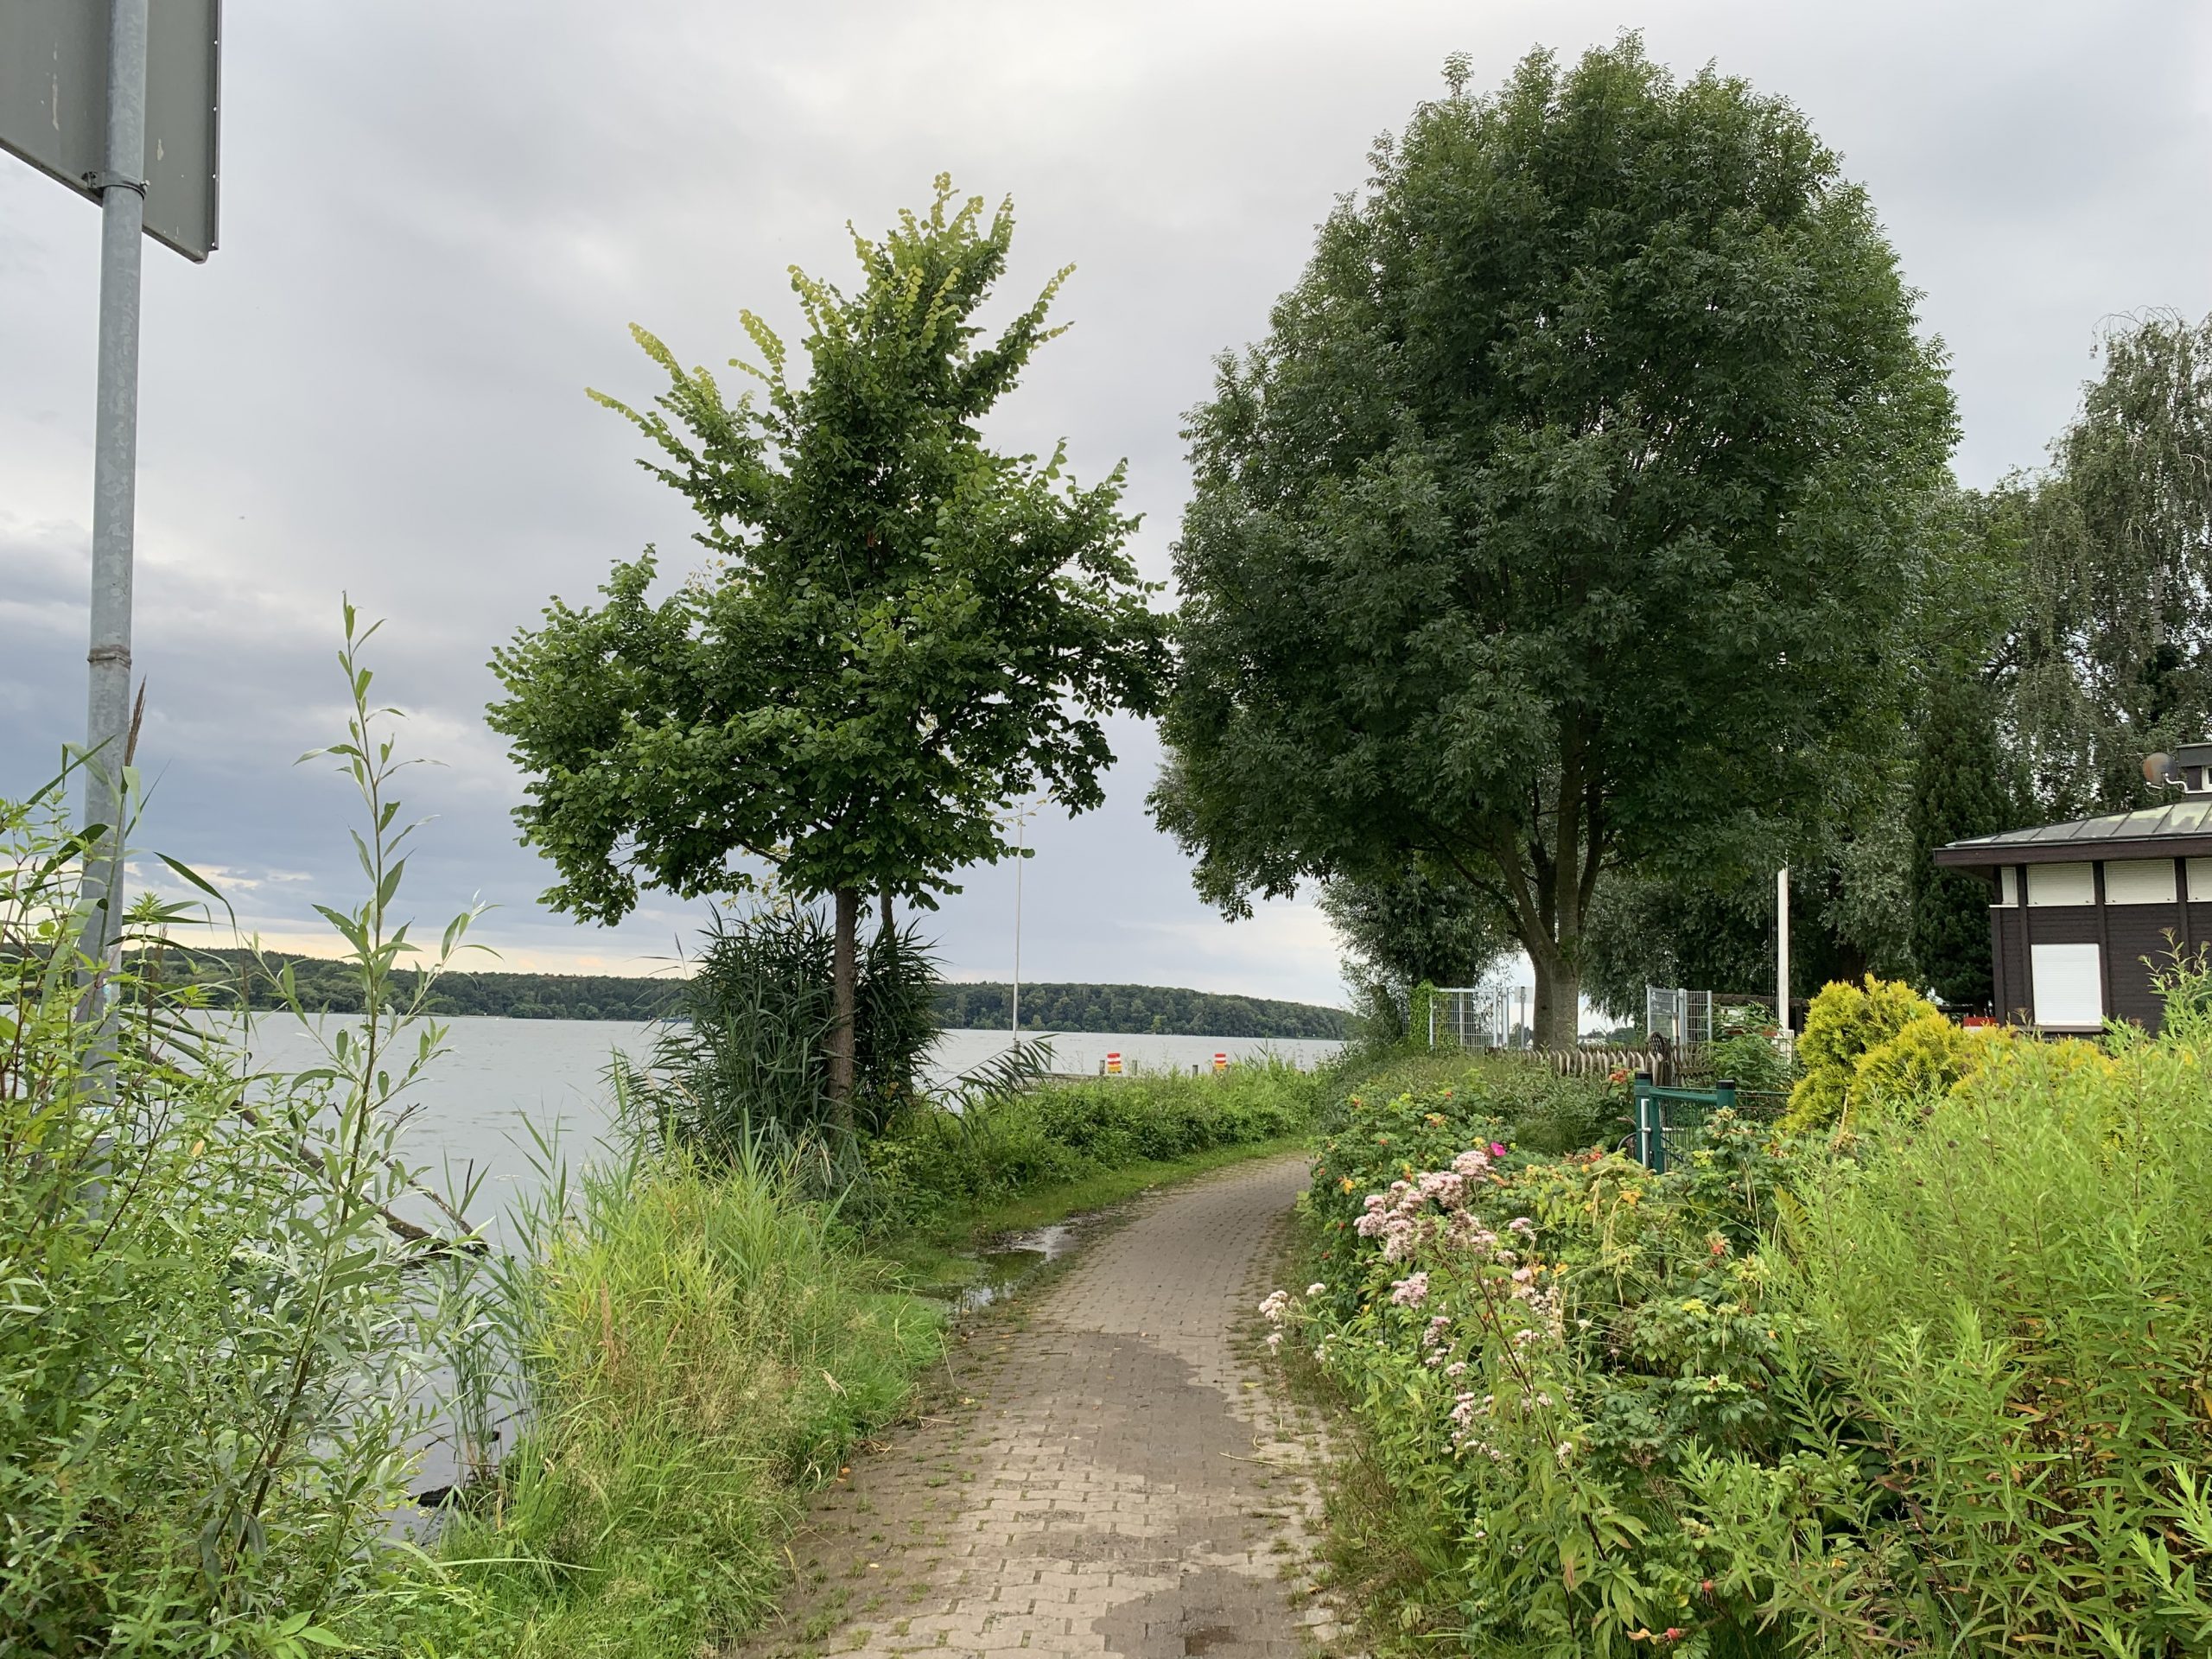 Ernst-Liesegang-Ufer lädt wieder zum Flanieren ein